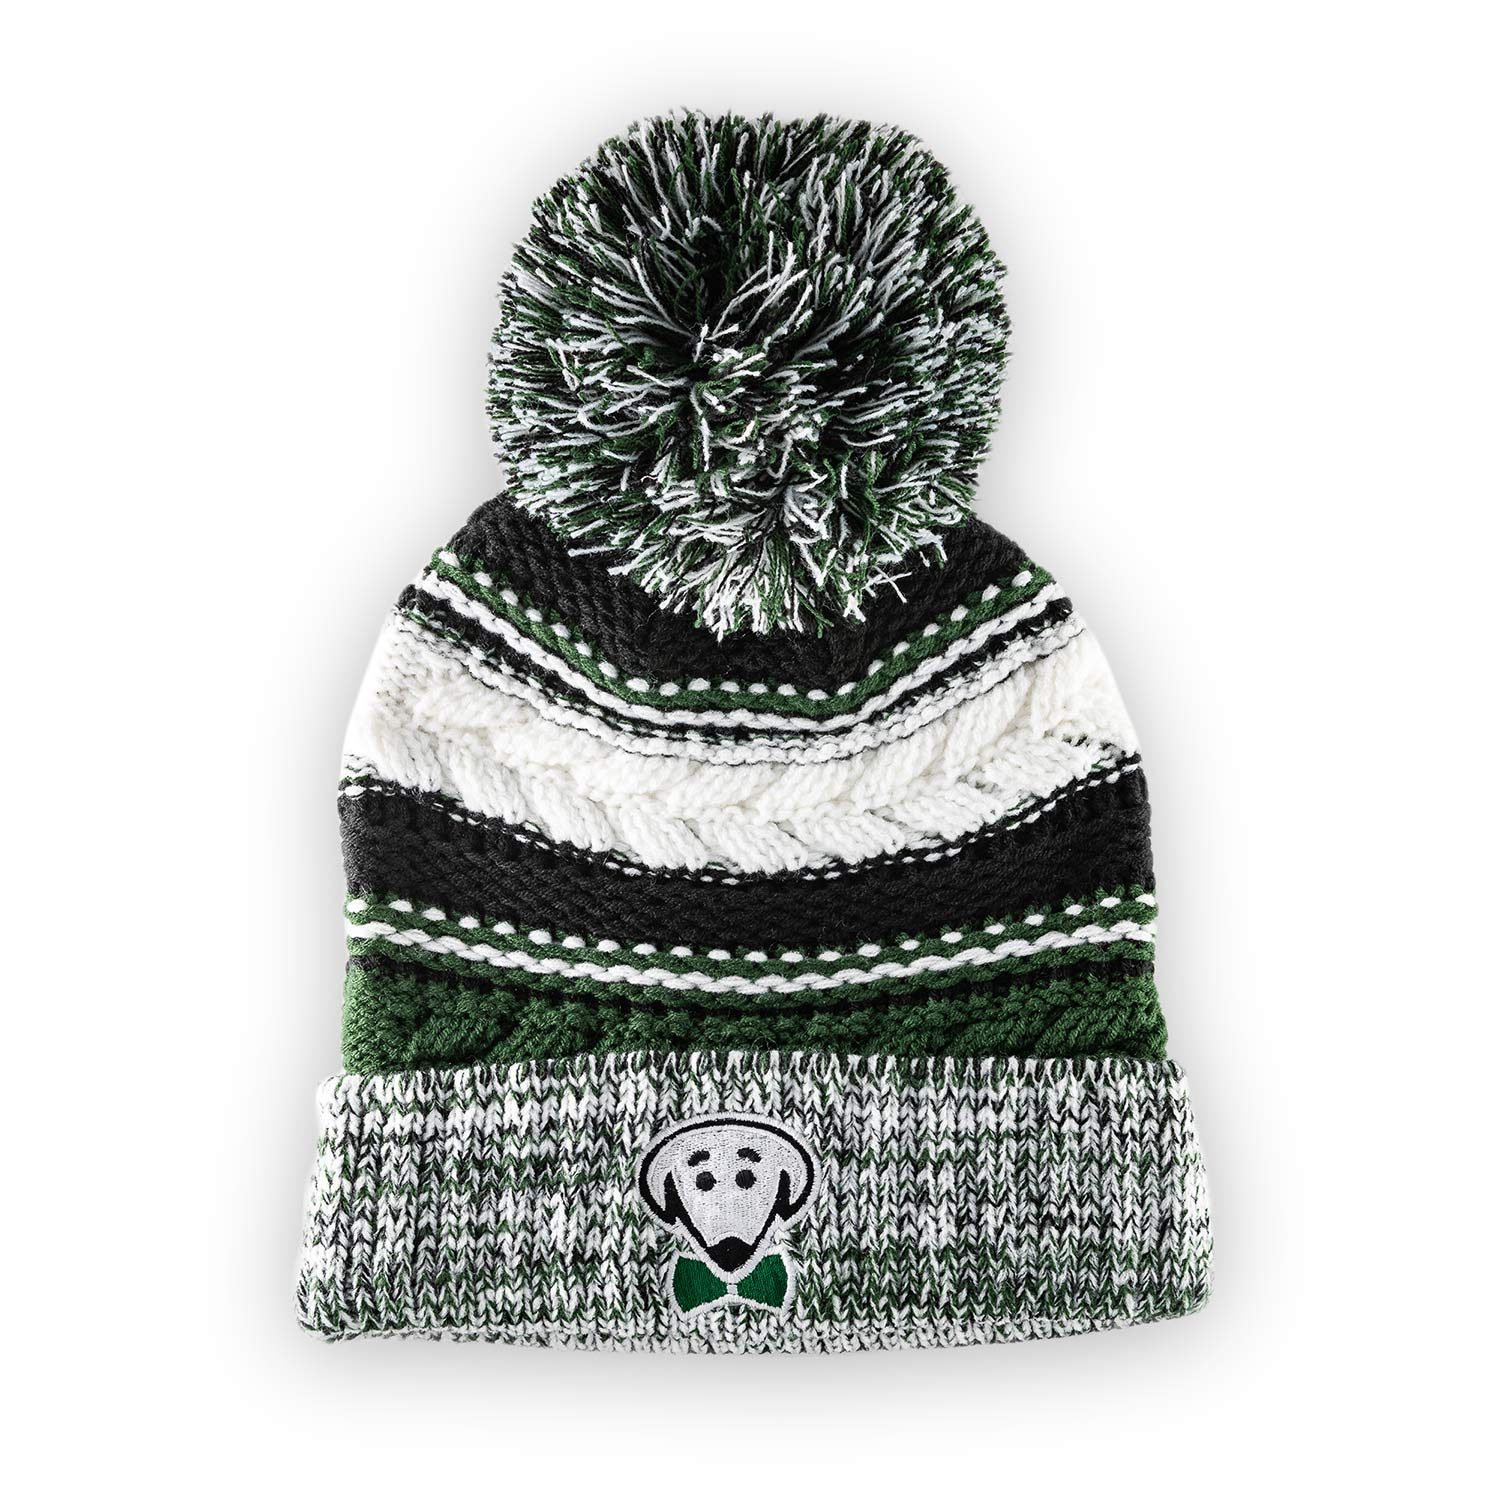 Riley winter big pom knit hat in green by Beau Tyler